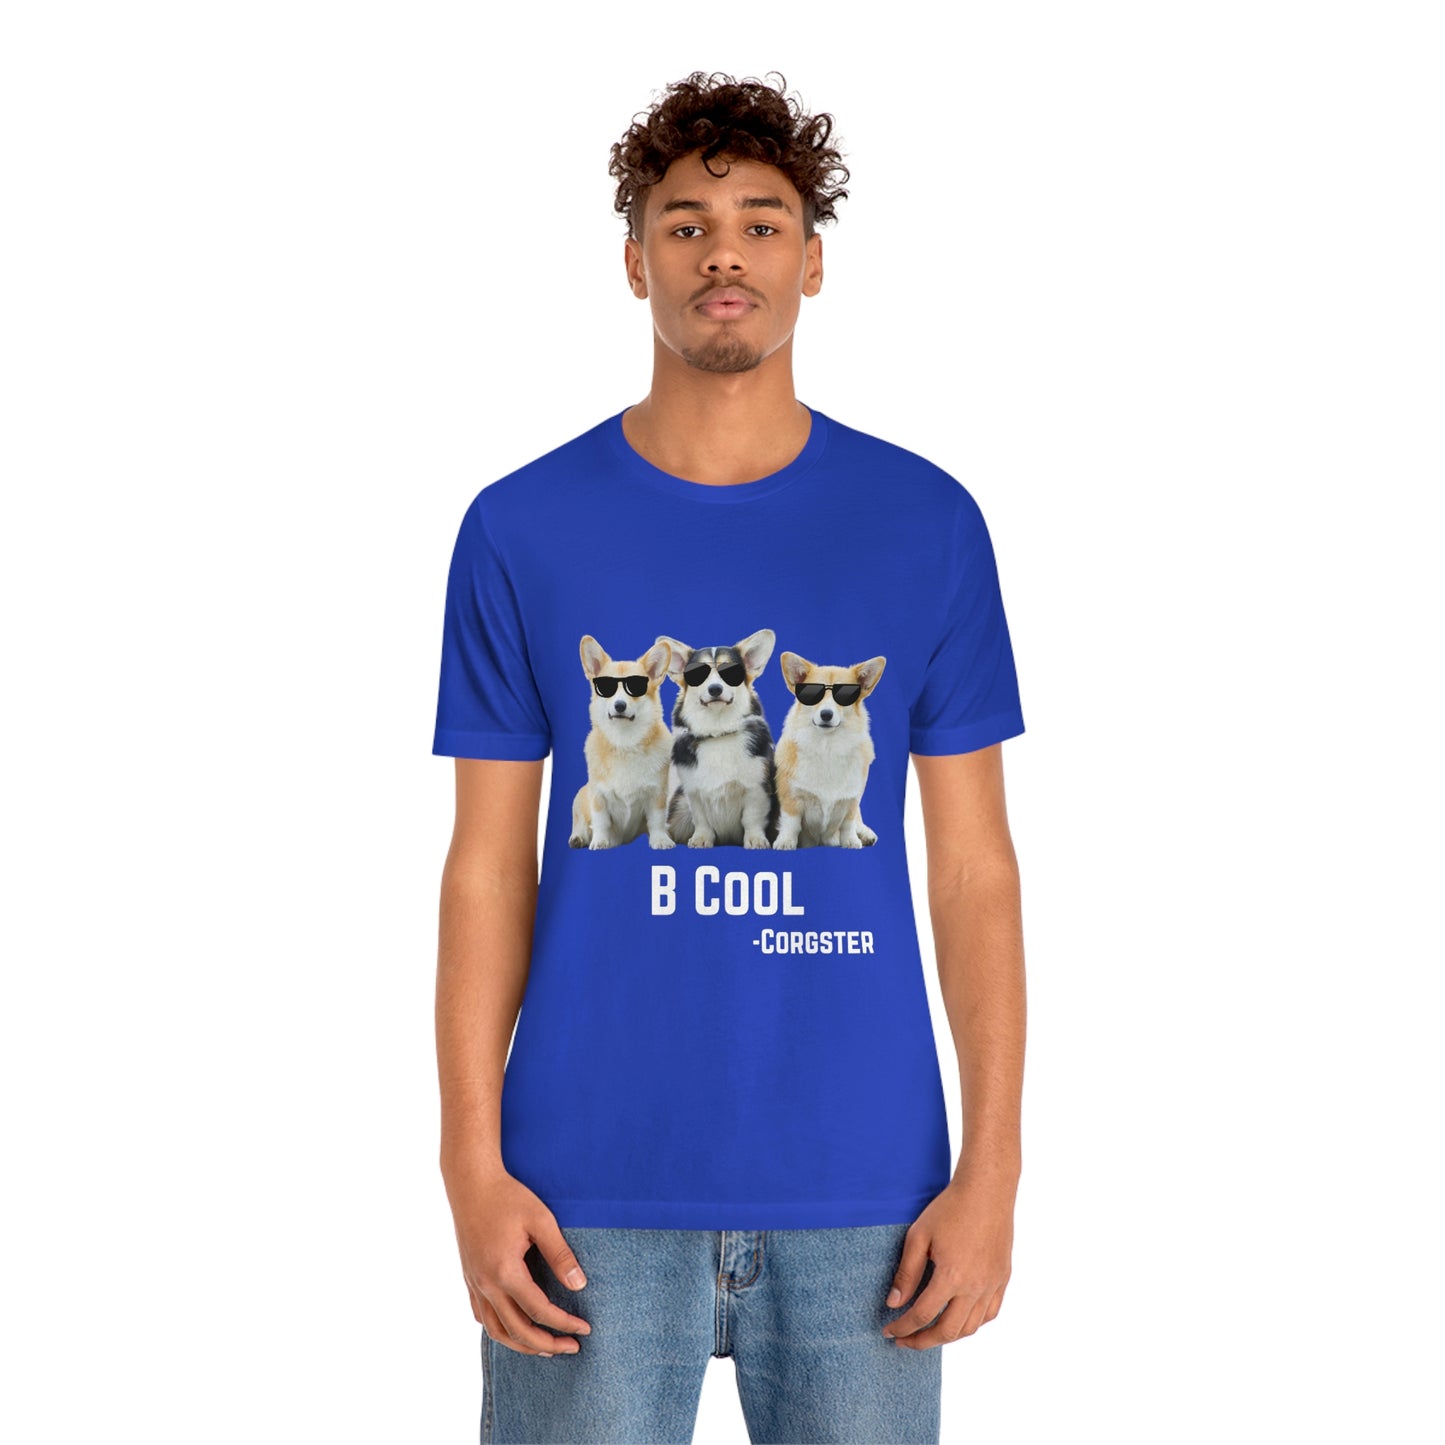 B Cool - The Corgster